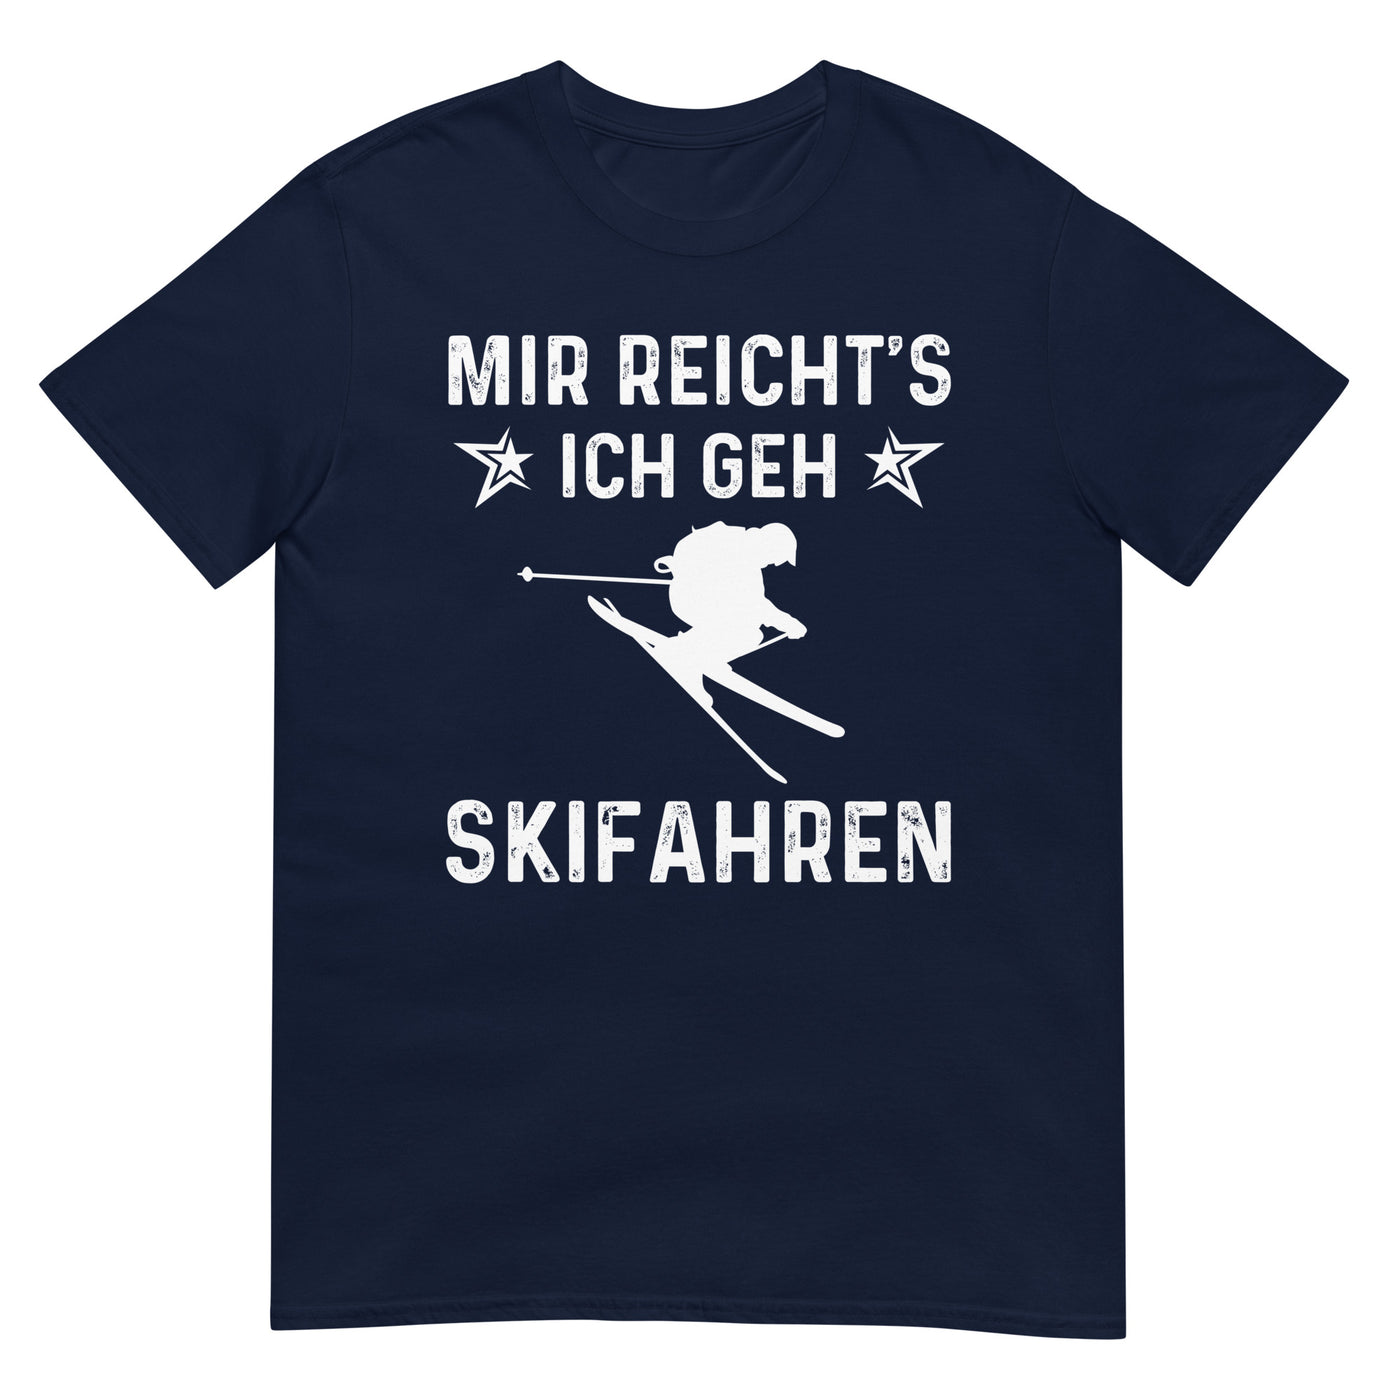 Mir Reicht's Ich Gen Skifahren - T-Shirt (Unisex) klettern ski xxx yyy zzz Navy